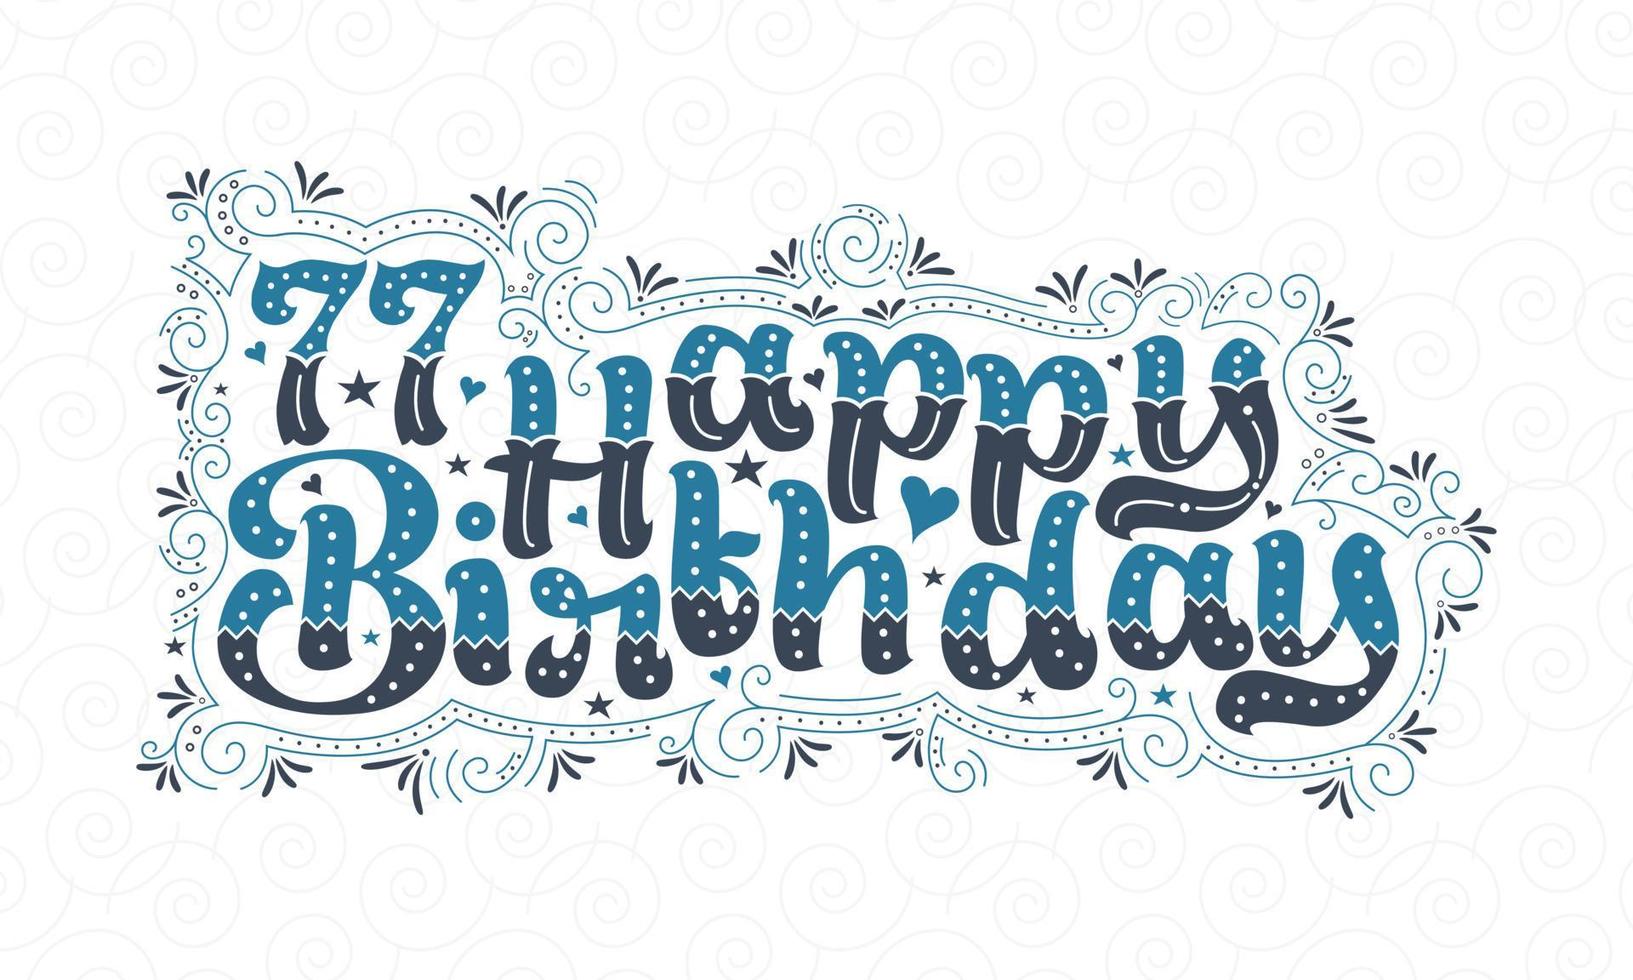 77a scritta di buon compleanno, bellissimo design tipografico di 77 anni di compleanno con punti, linee e foglie blu e nere. vettore